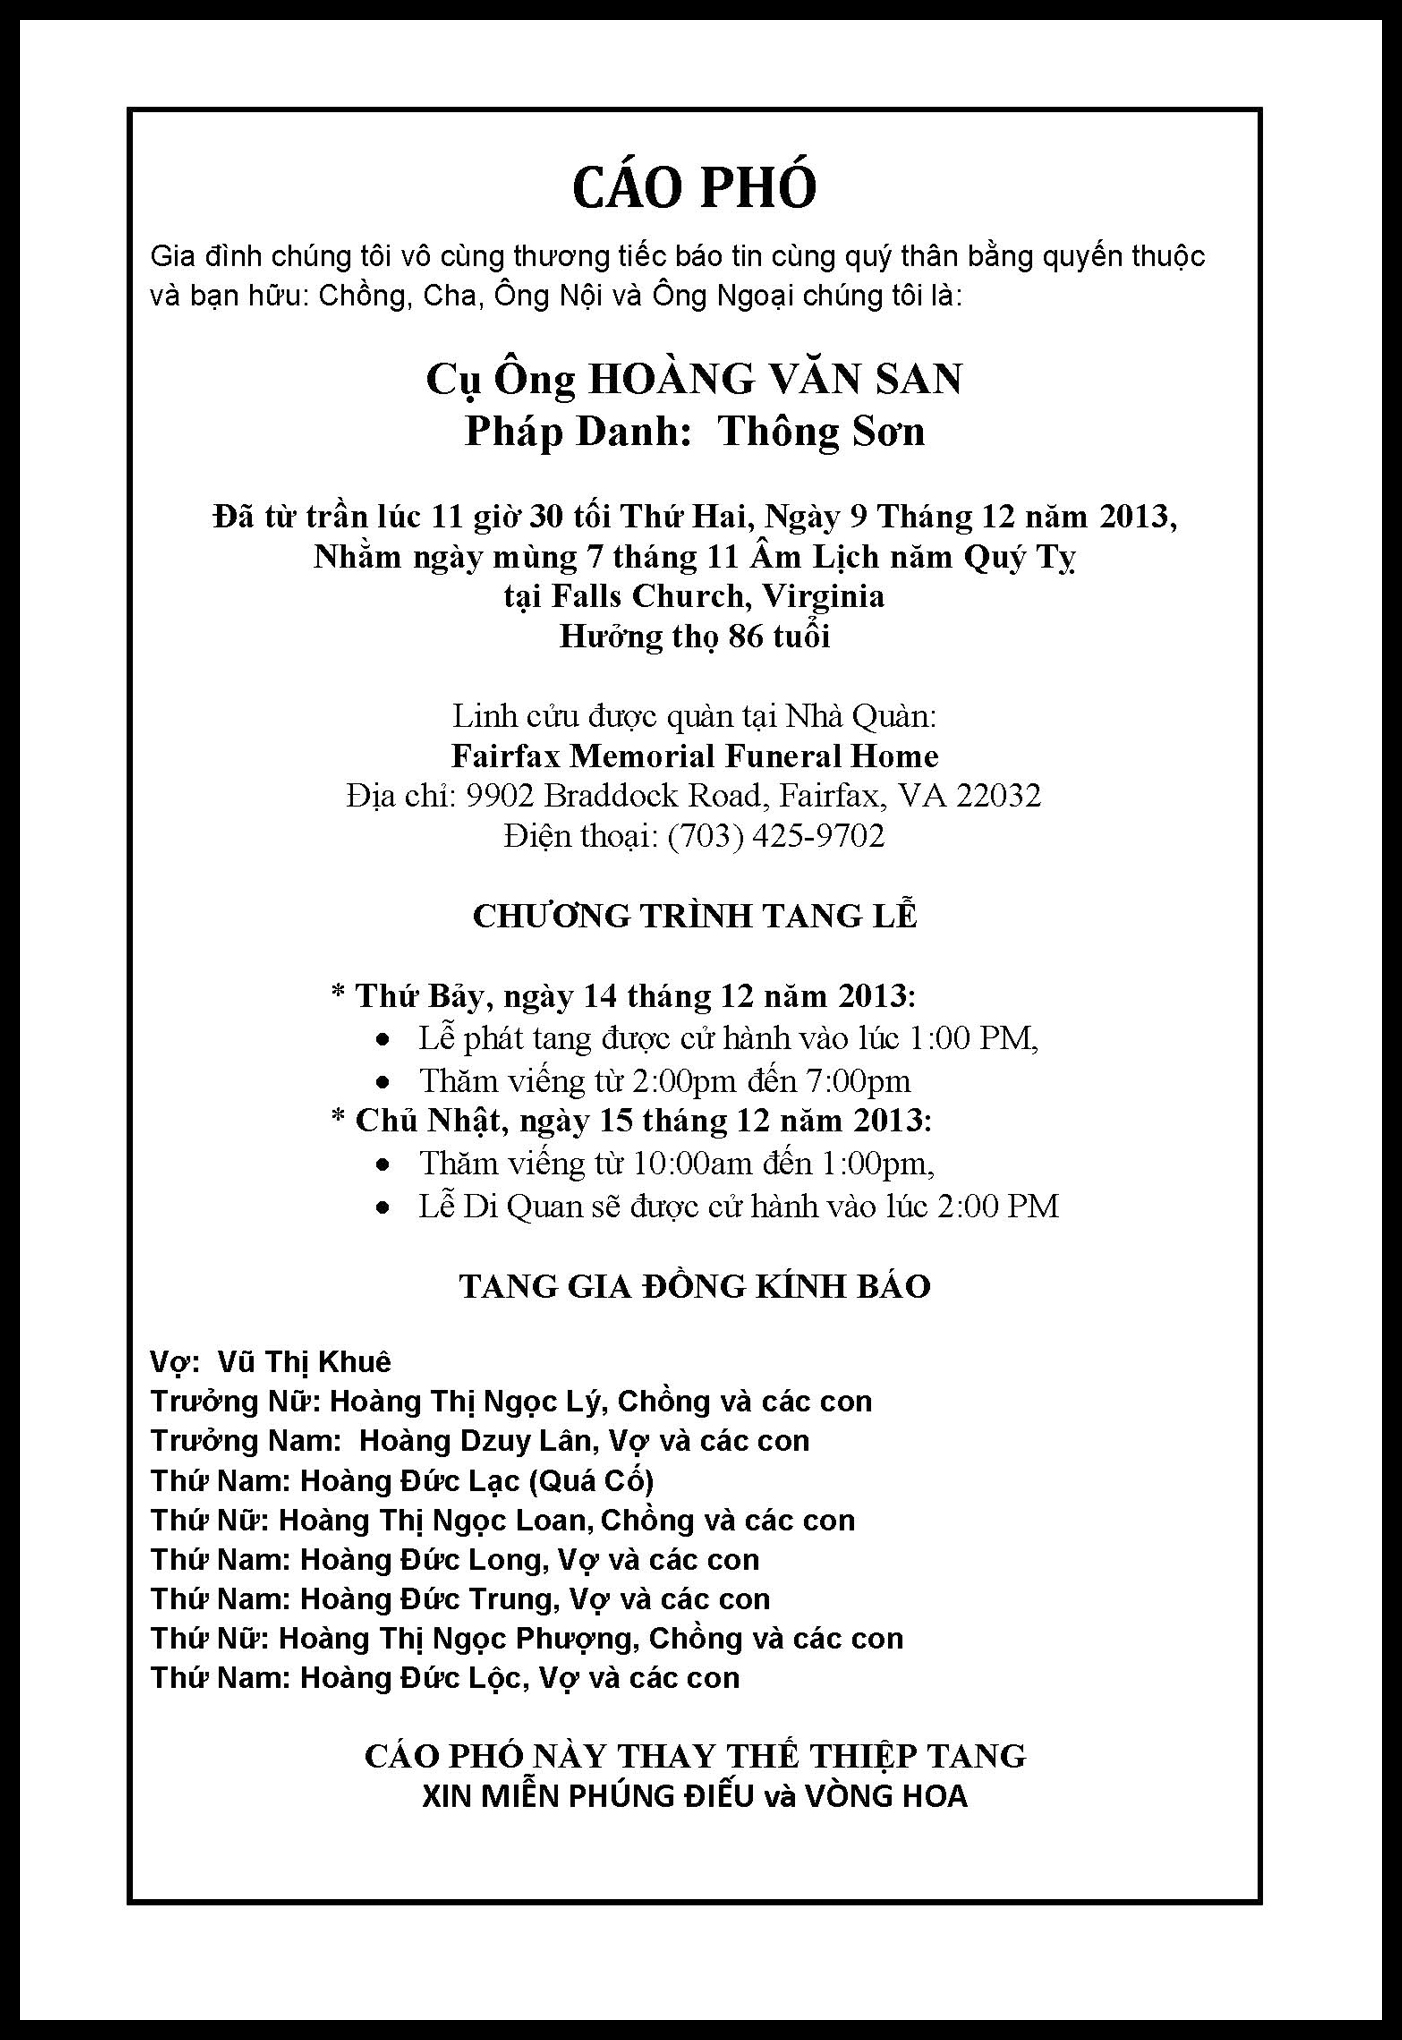 Cáo Phó và chương trình tang lễ Ông Hoàng Văn San NHÀ VIỆT NAM